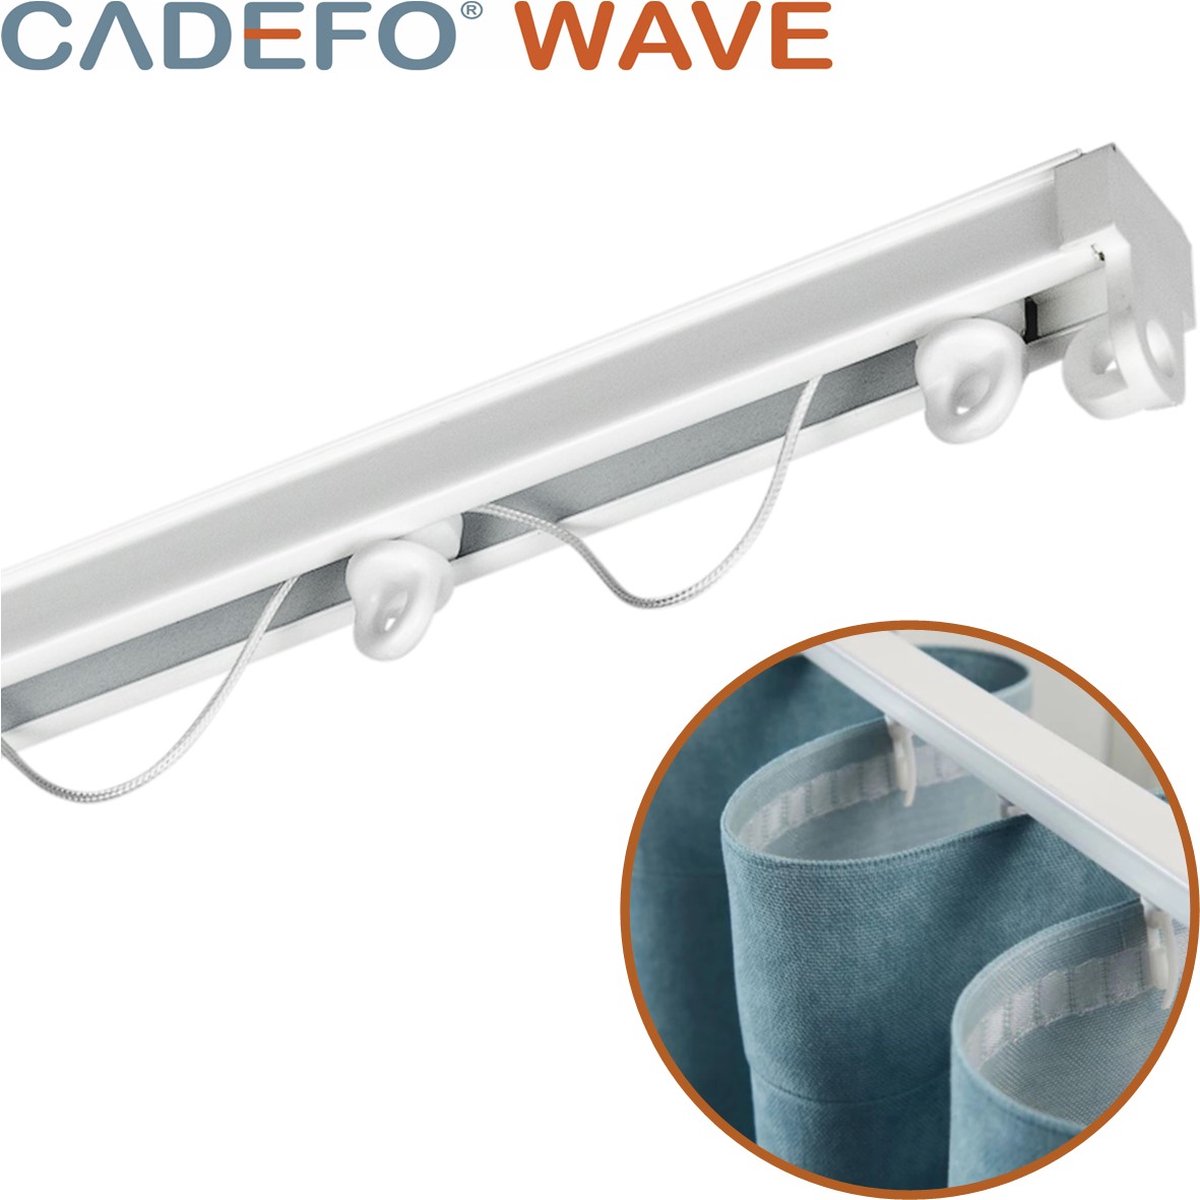 CADEFO WAVE (401 - 450 cm) Gordijnrails - Compleet op maat! - UIT 1 STUK - Leverbaar tot 6 meter - Plafondbevestiging - Lengte 441 cm